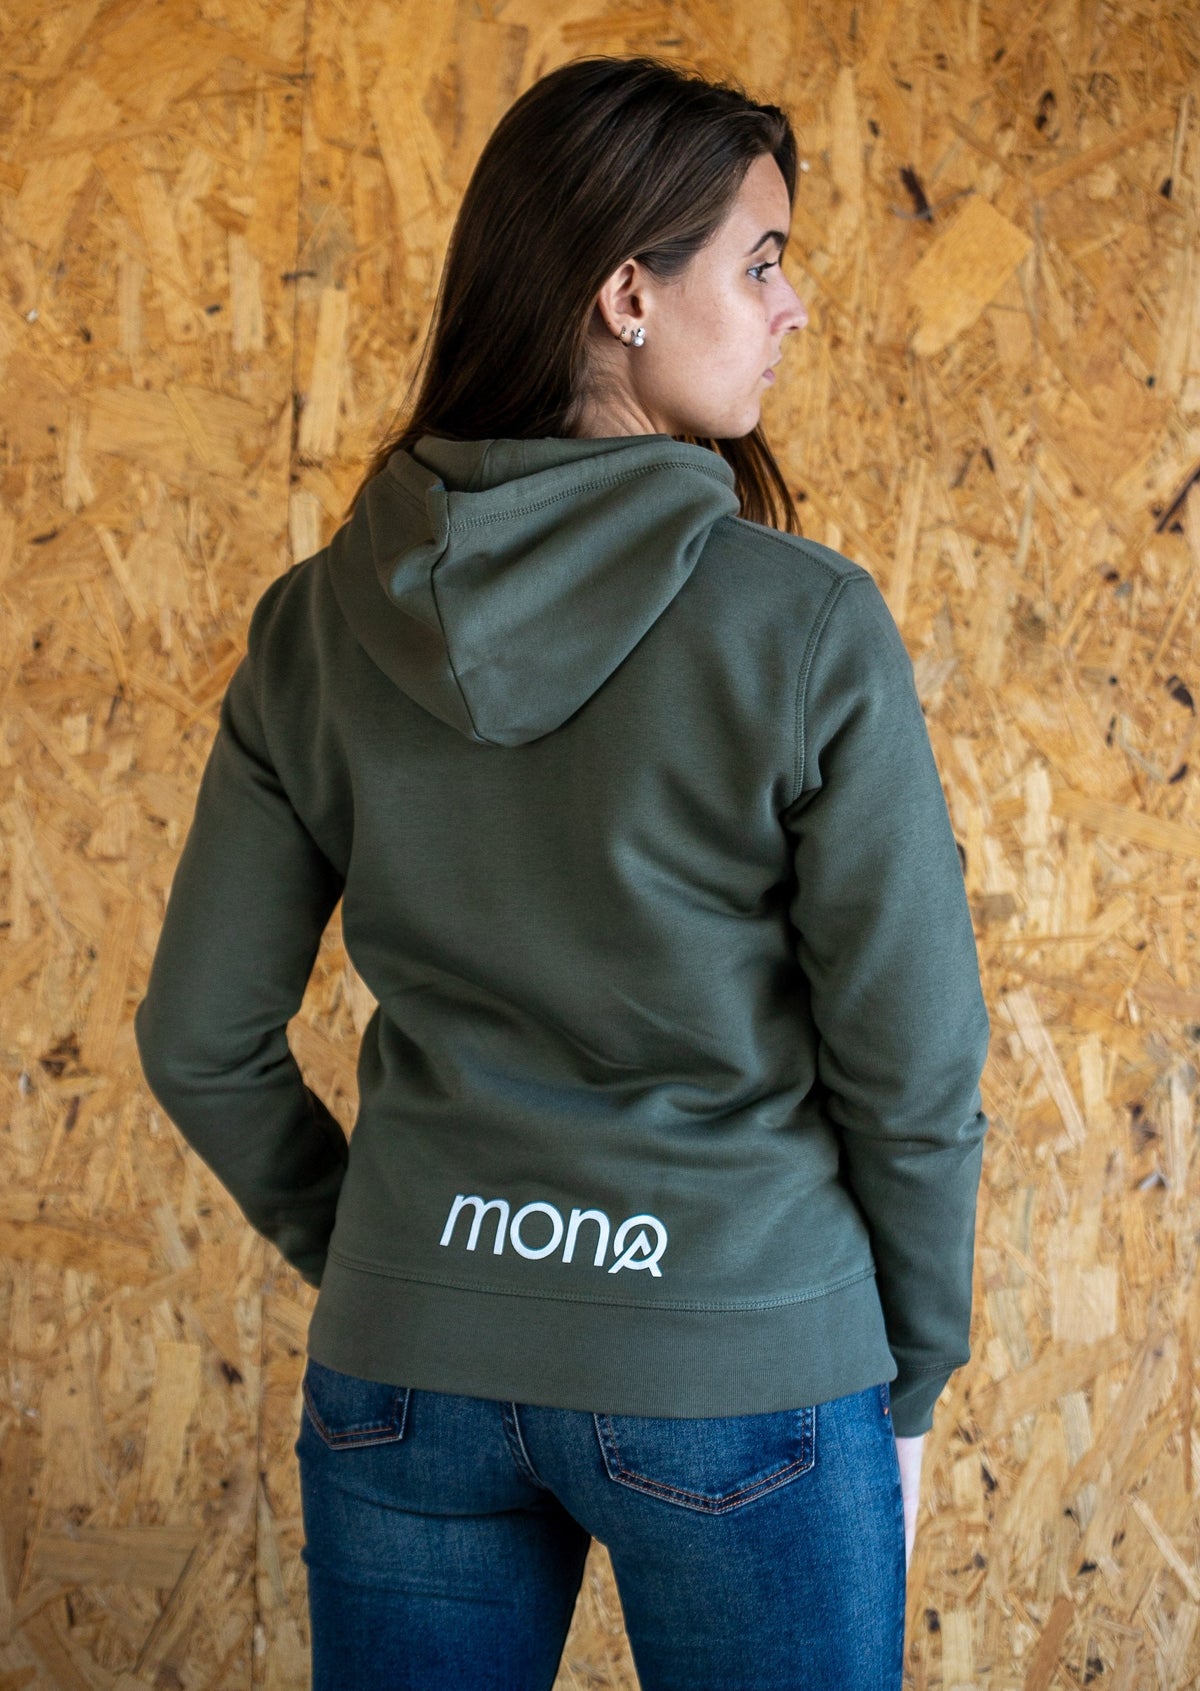 MONOA unisex hooded sweatshirt